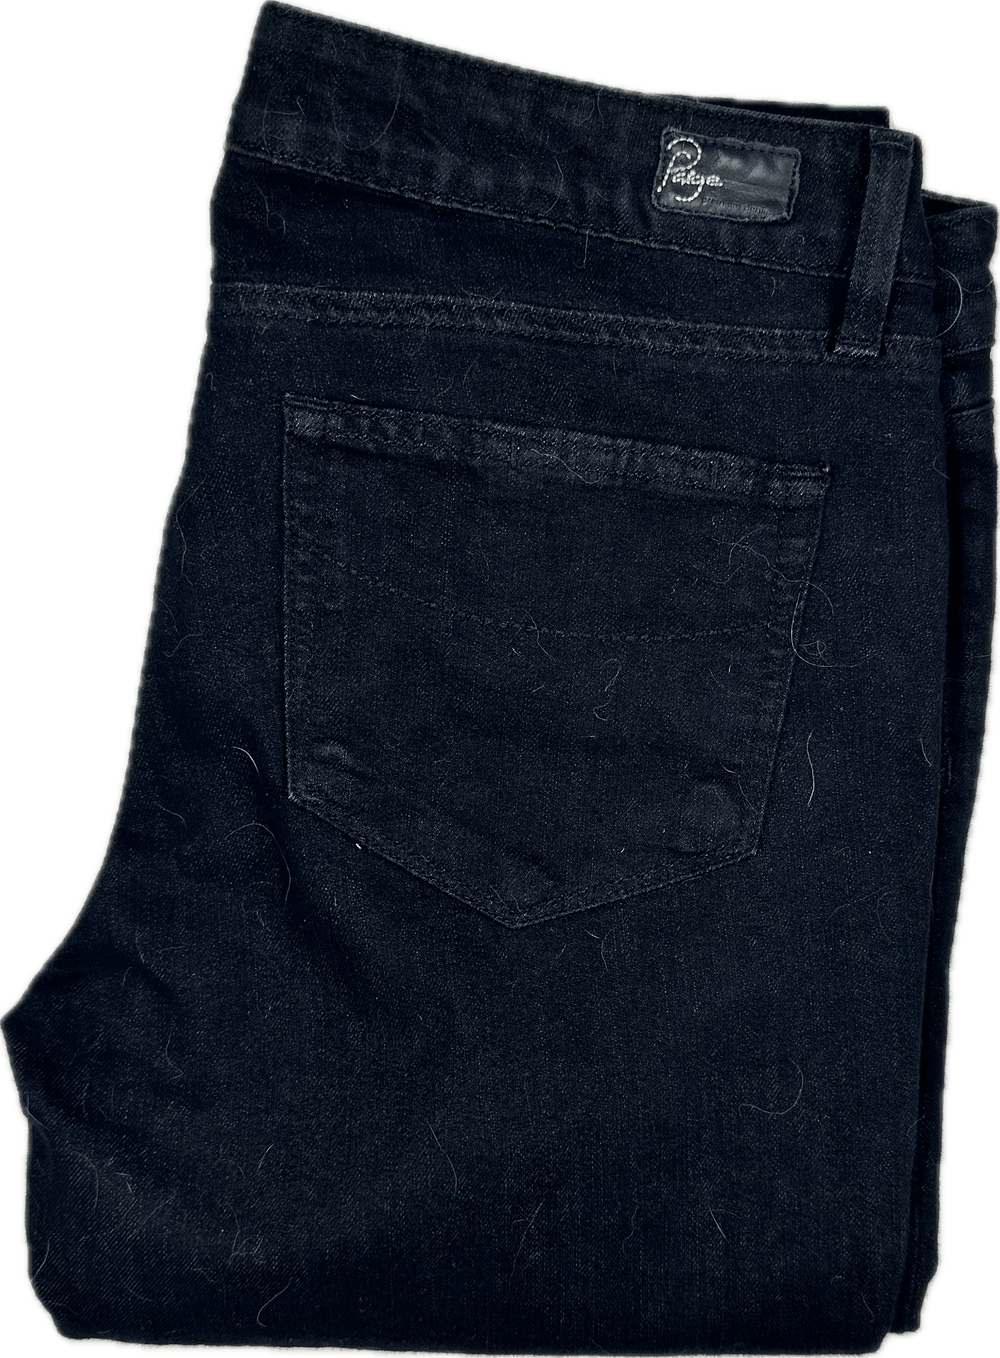 Paige Denim 'Skyline' Stretch Slim Straight Jeans- Size 30 - Jean Pool